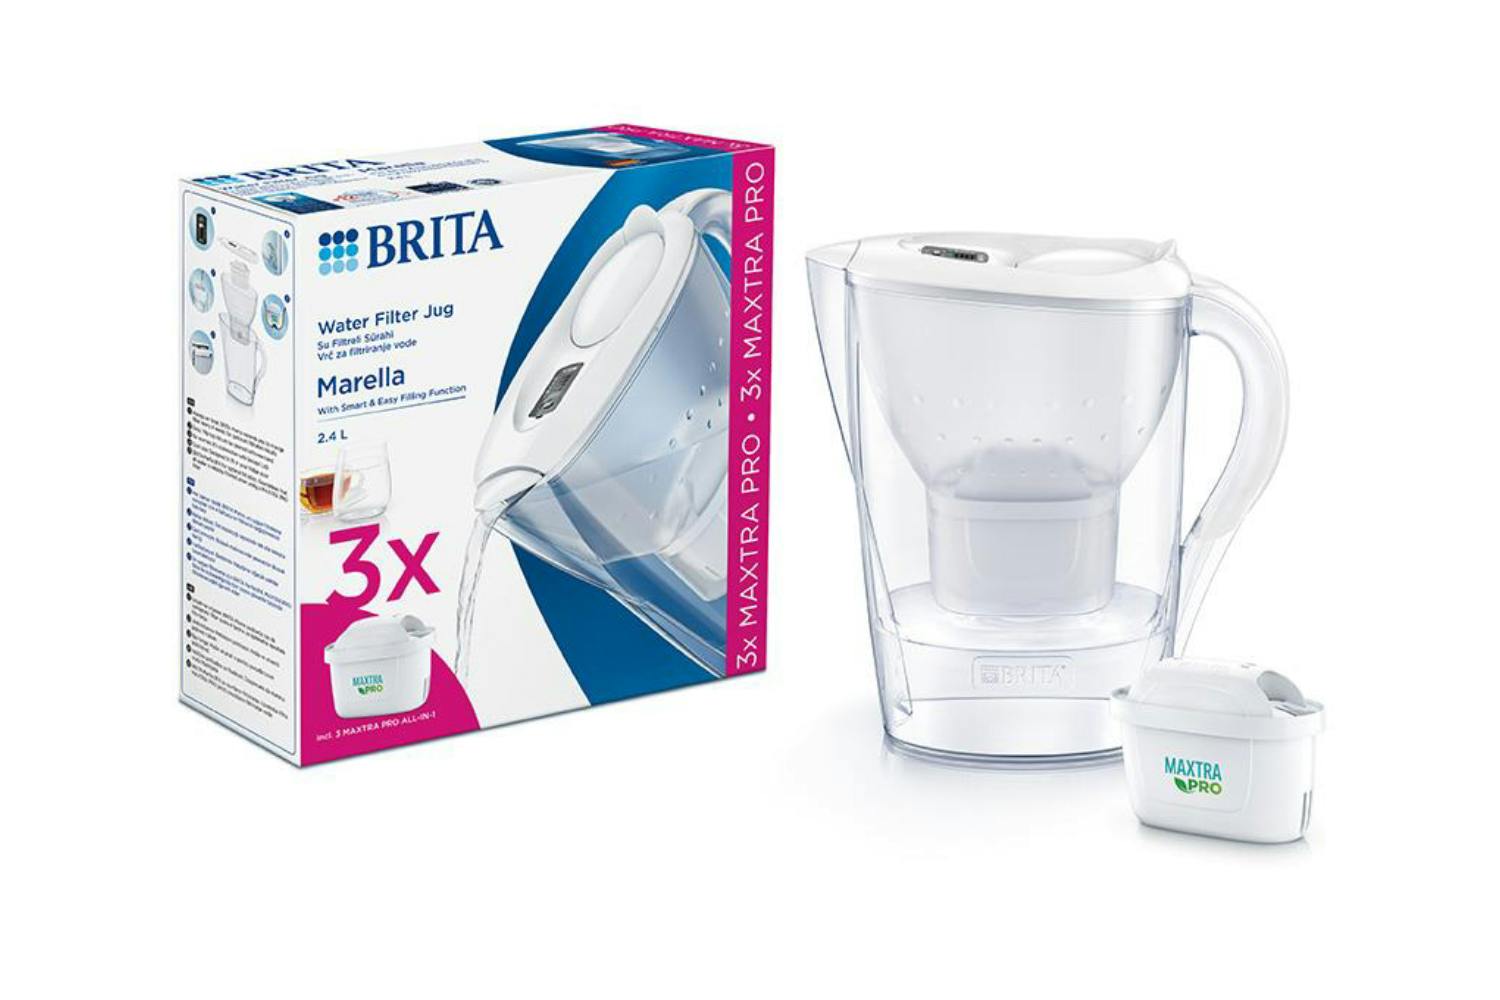 Brita Marella Maxtra Pro 2.4L Water Filter Jug, 3 Cartridges, White